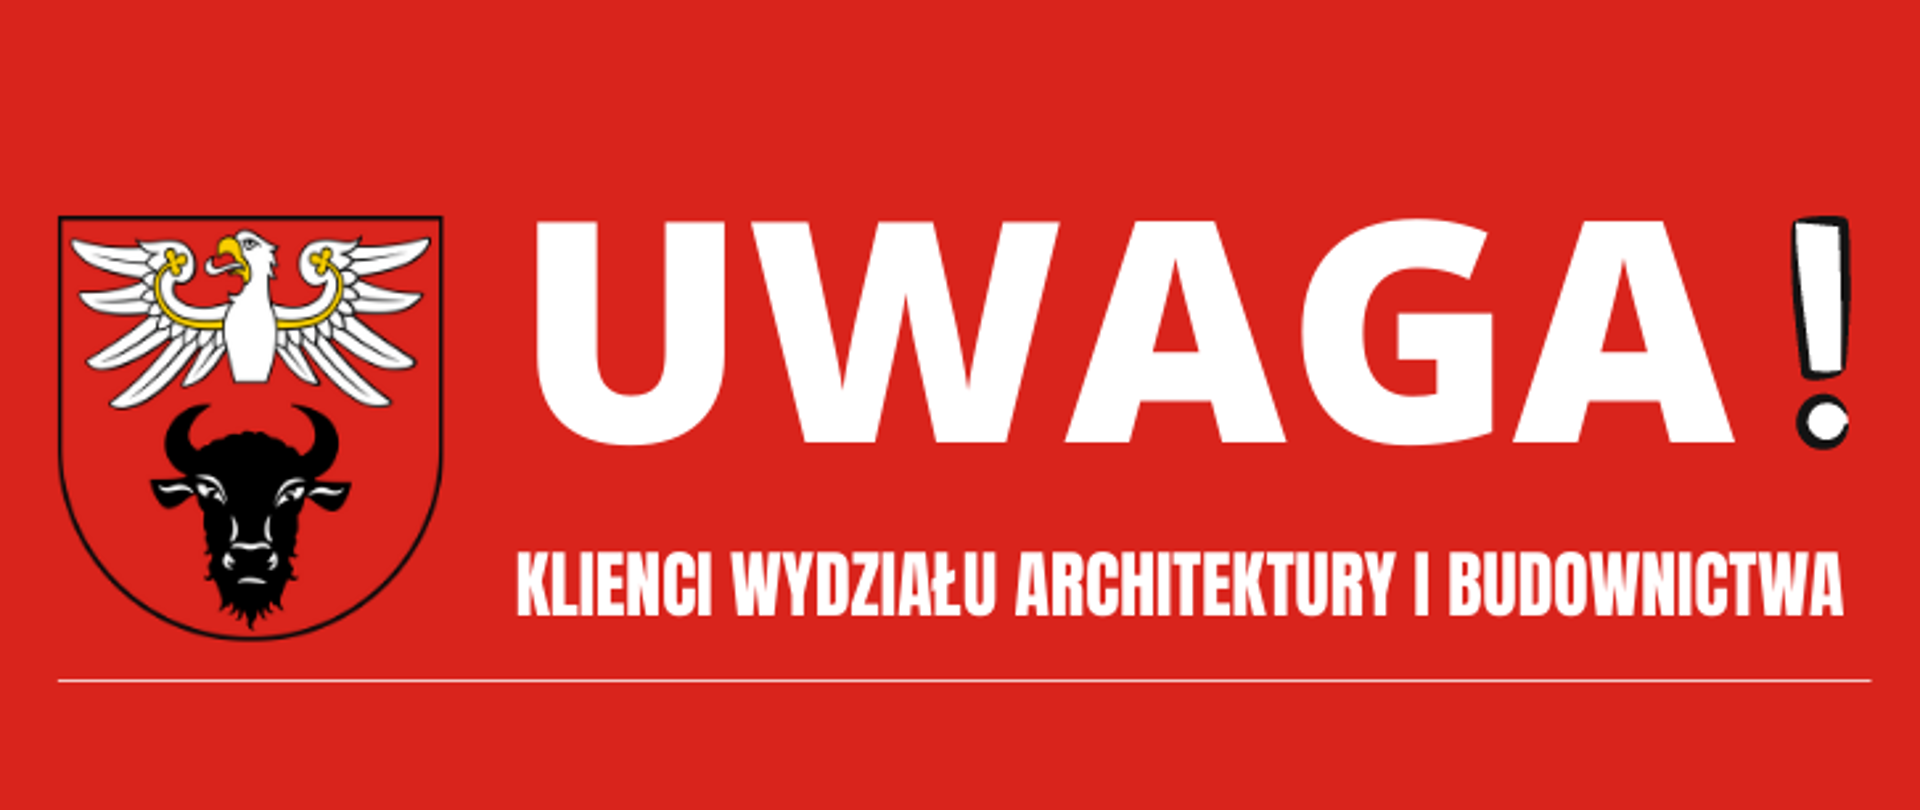 banner na którym znajduje się logotyp powiatu oraz napis "UWAGA! KLIENCI WYDZIAŁU ARCHITEKTURY I BUDOWNICTWA", na obrazku dominuje kolor czerwony